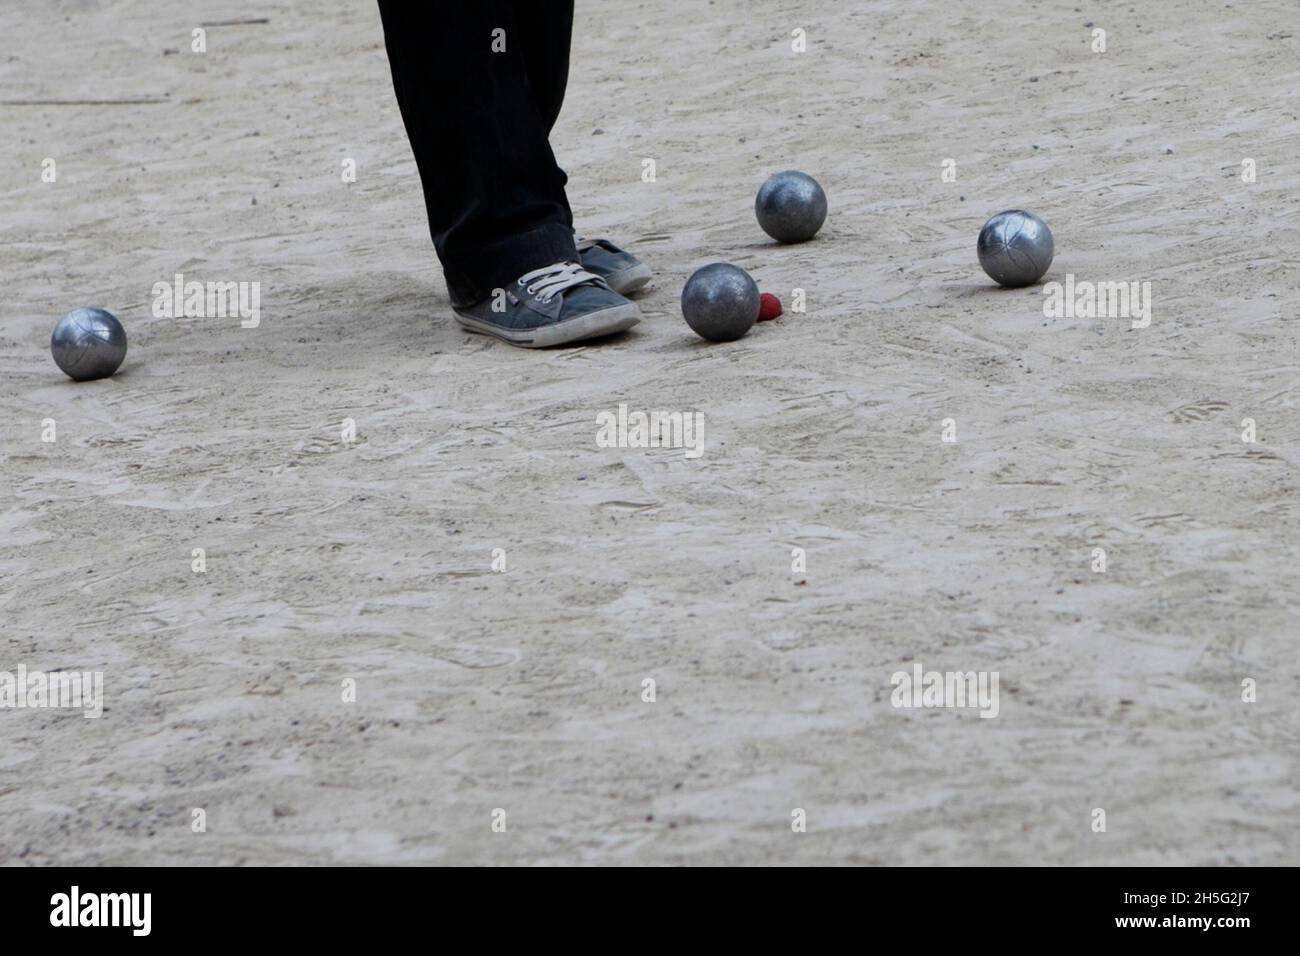 Ein Franzose, der gerade -auf einem öffentlichen Platz- Boule spielt. Keine Erkennbarkeit, da nur Bein. Cannes, Frankreich. Foto de stock